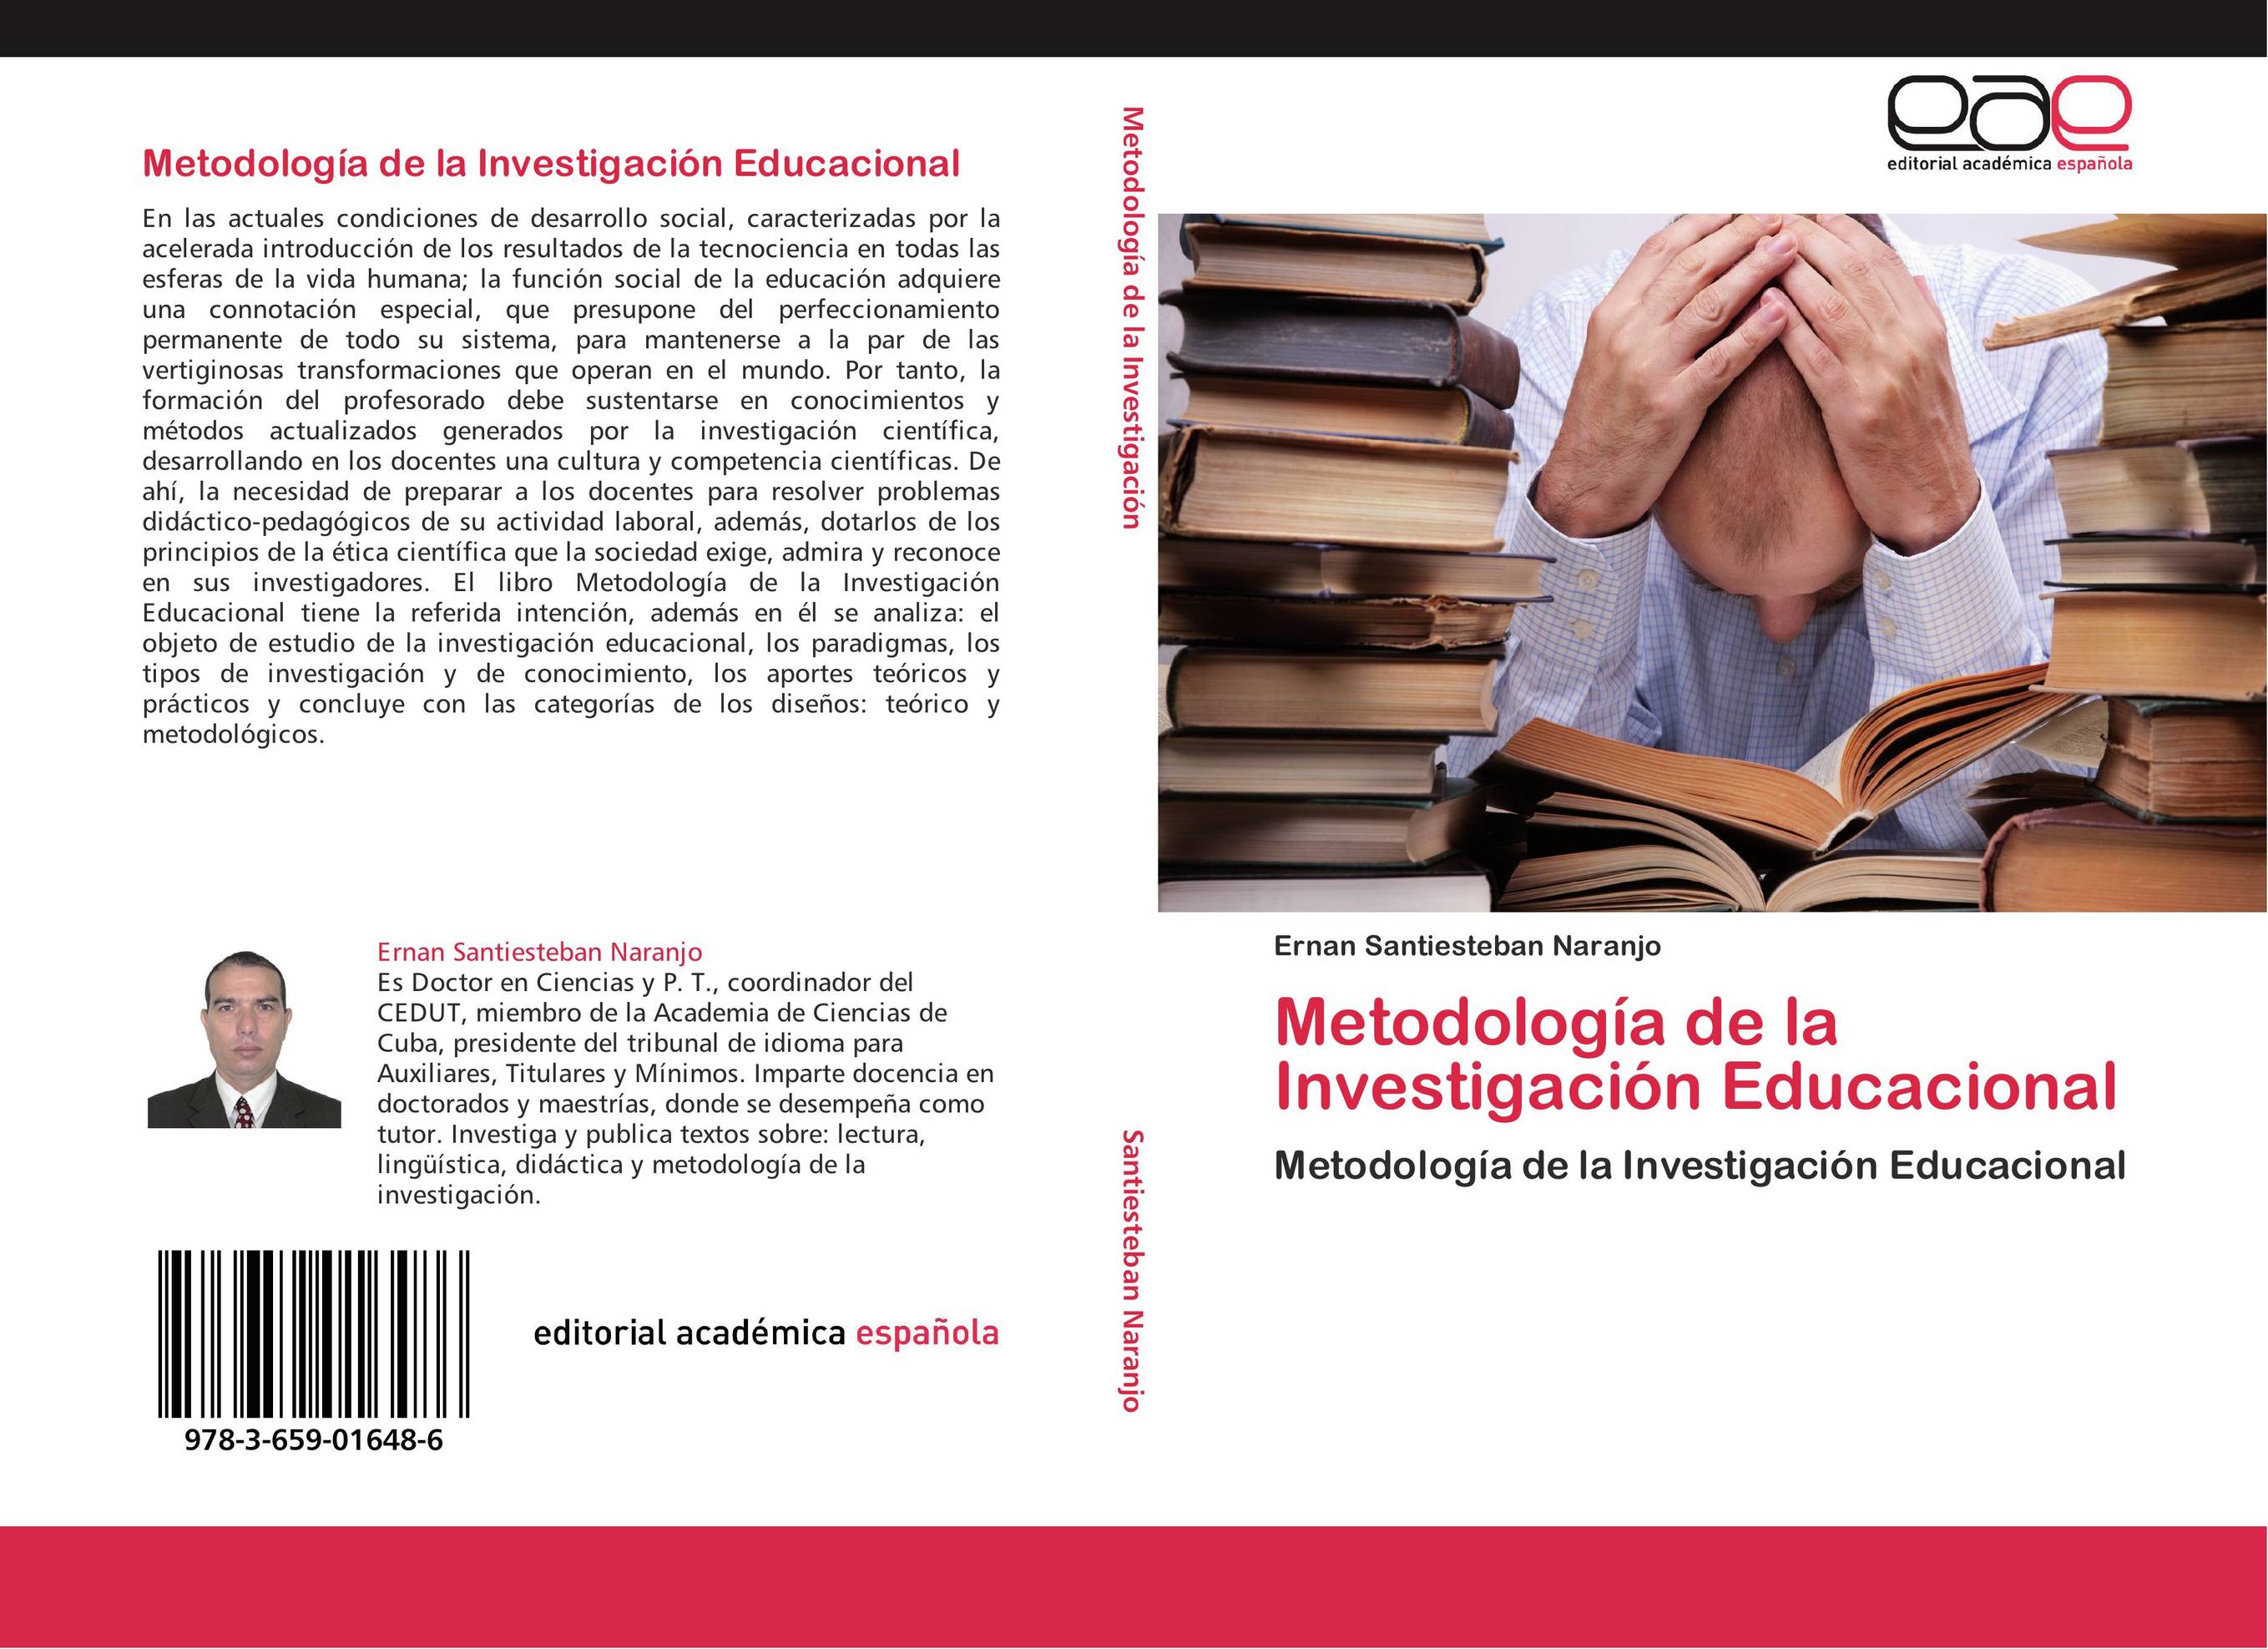 Metodología de la Investigación Educacional